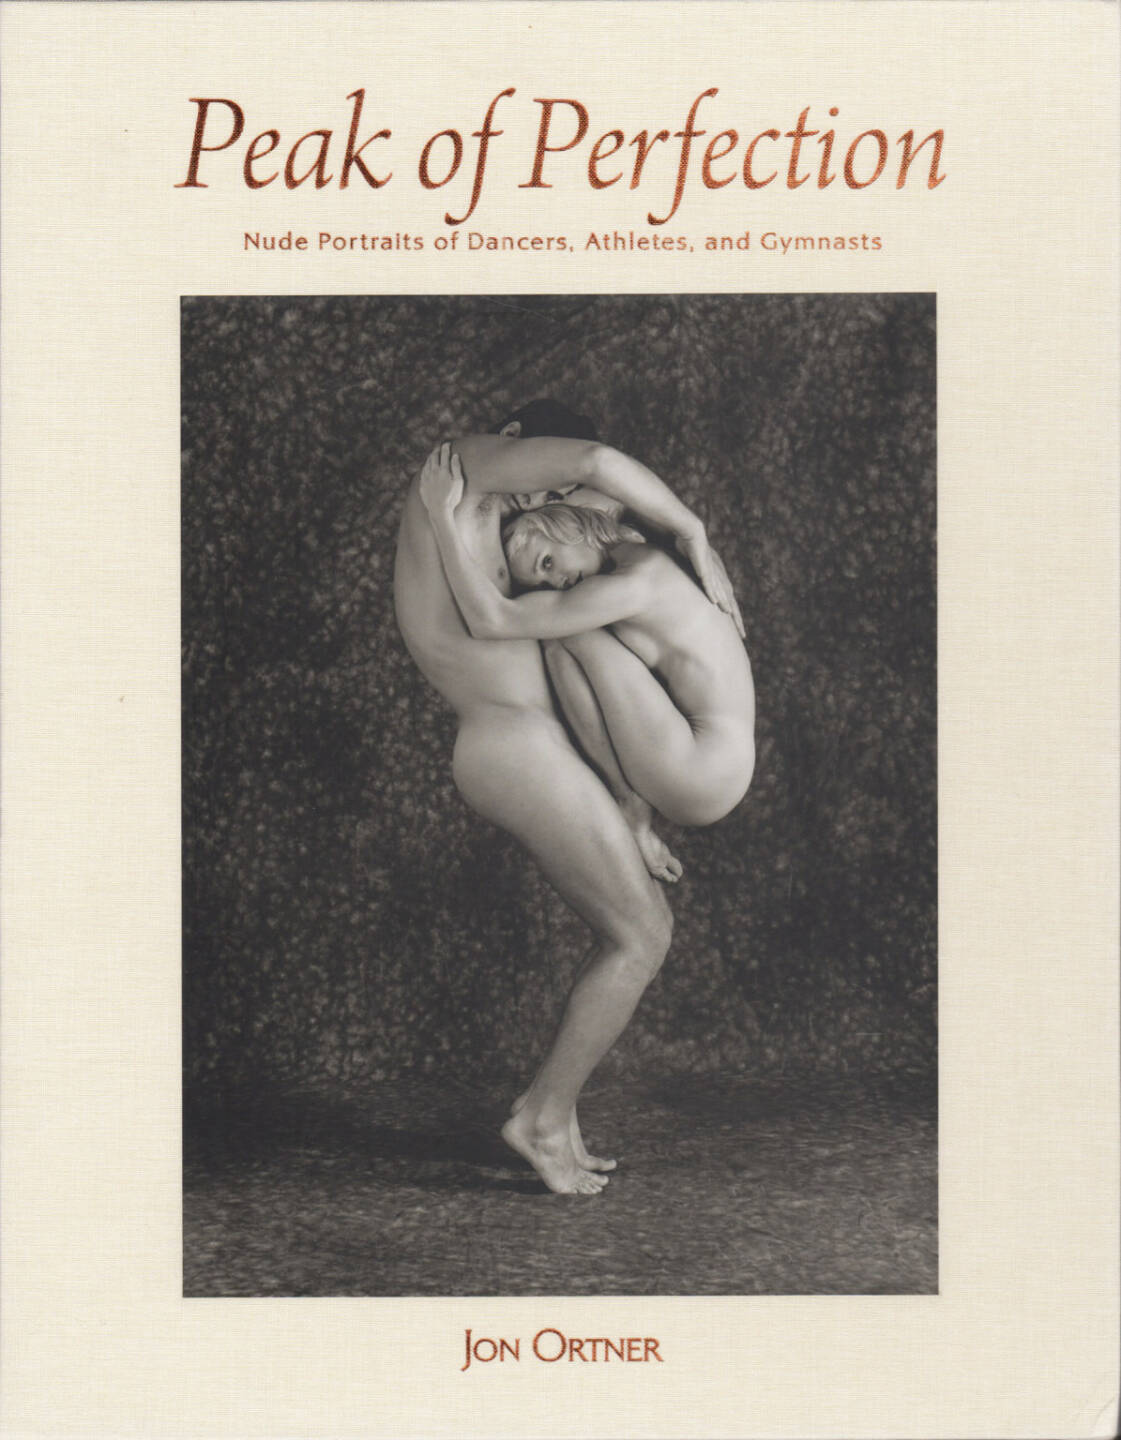 Jon Ortner - Peak Of Perfection, Schiffer Publication 2015, Cover - http://josefchladek.com/book/jon_ortner_-_peak_of_perfection